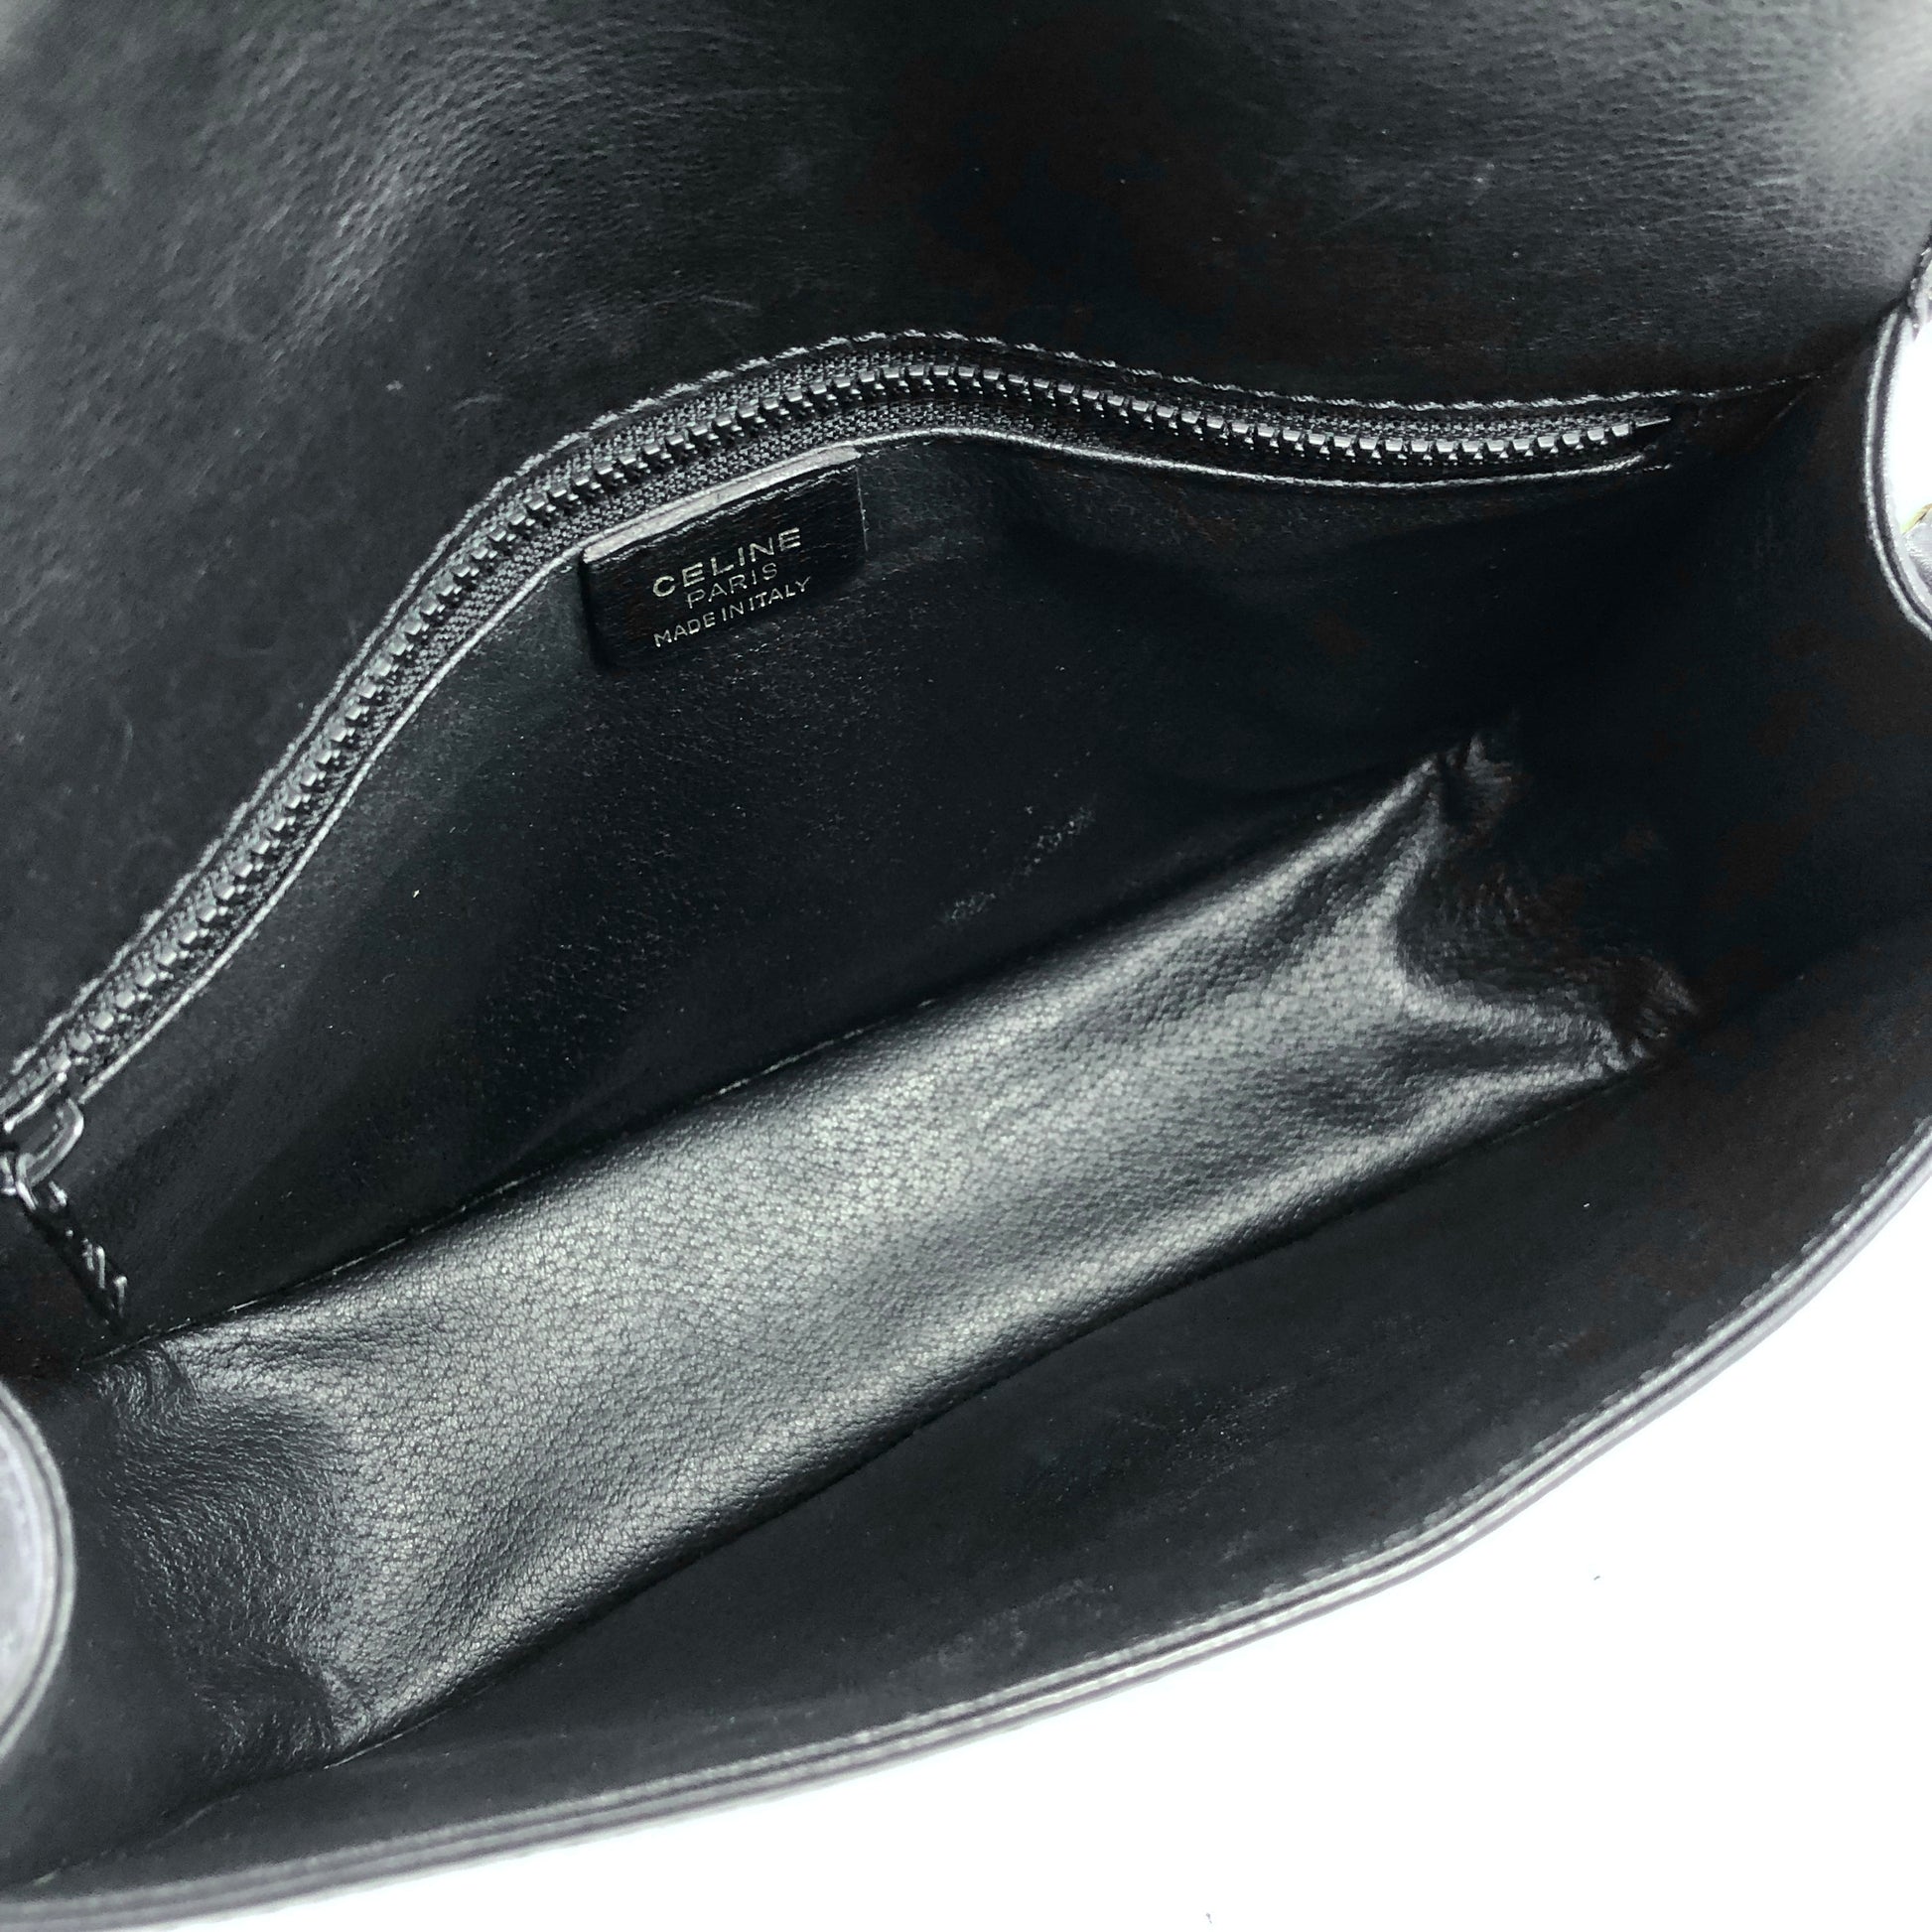 GUCCI Logo Leather Chain Crossbody Shoulder bag Black Vintage vypi6w